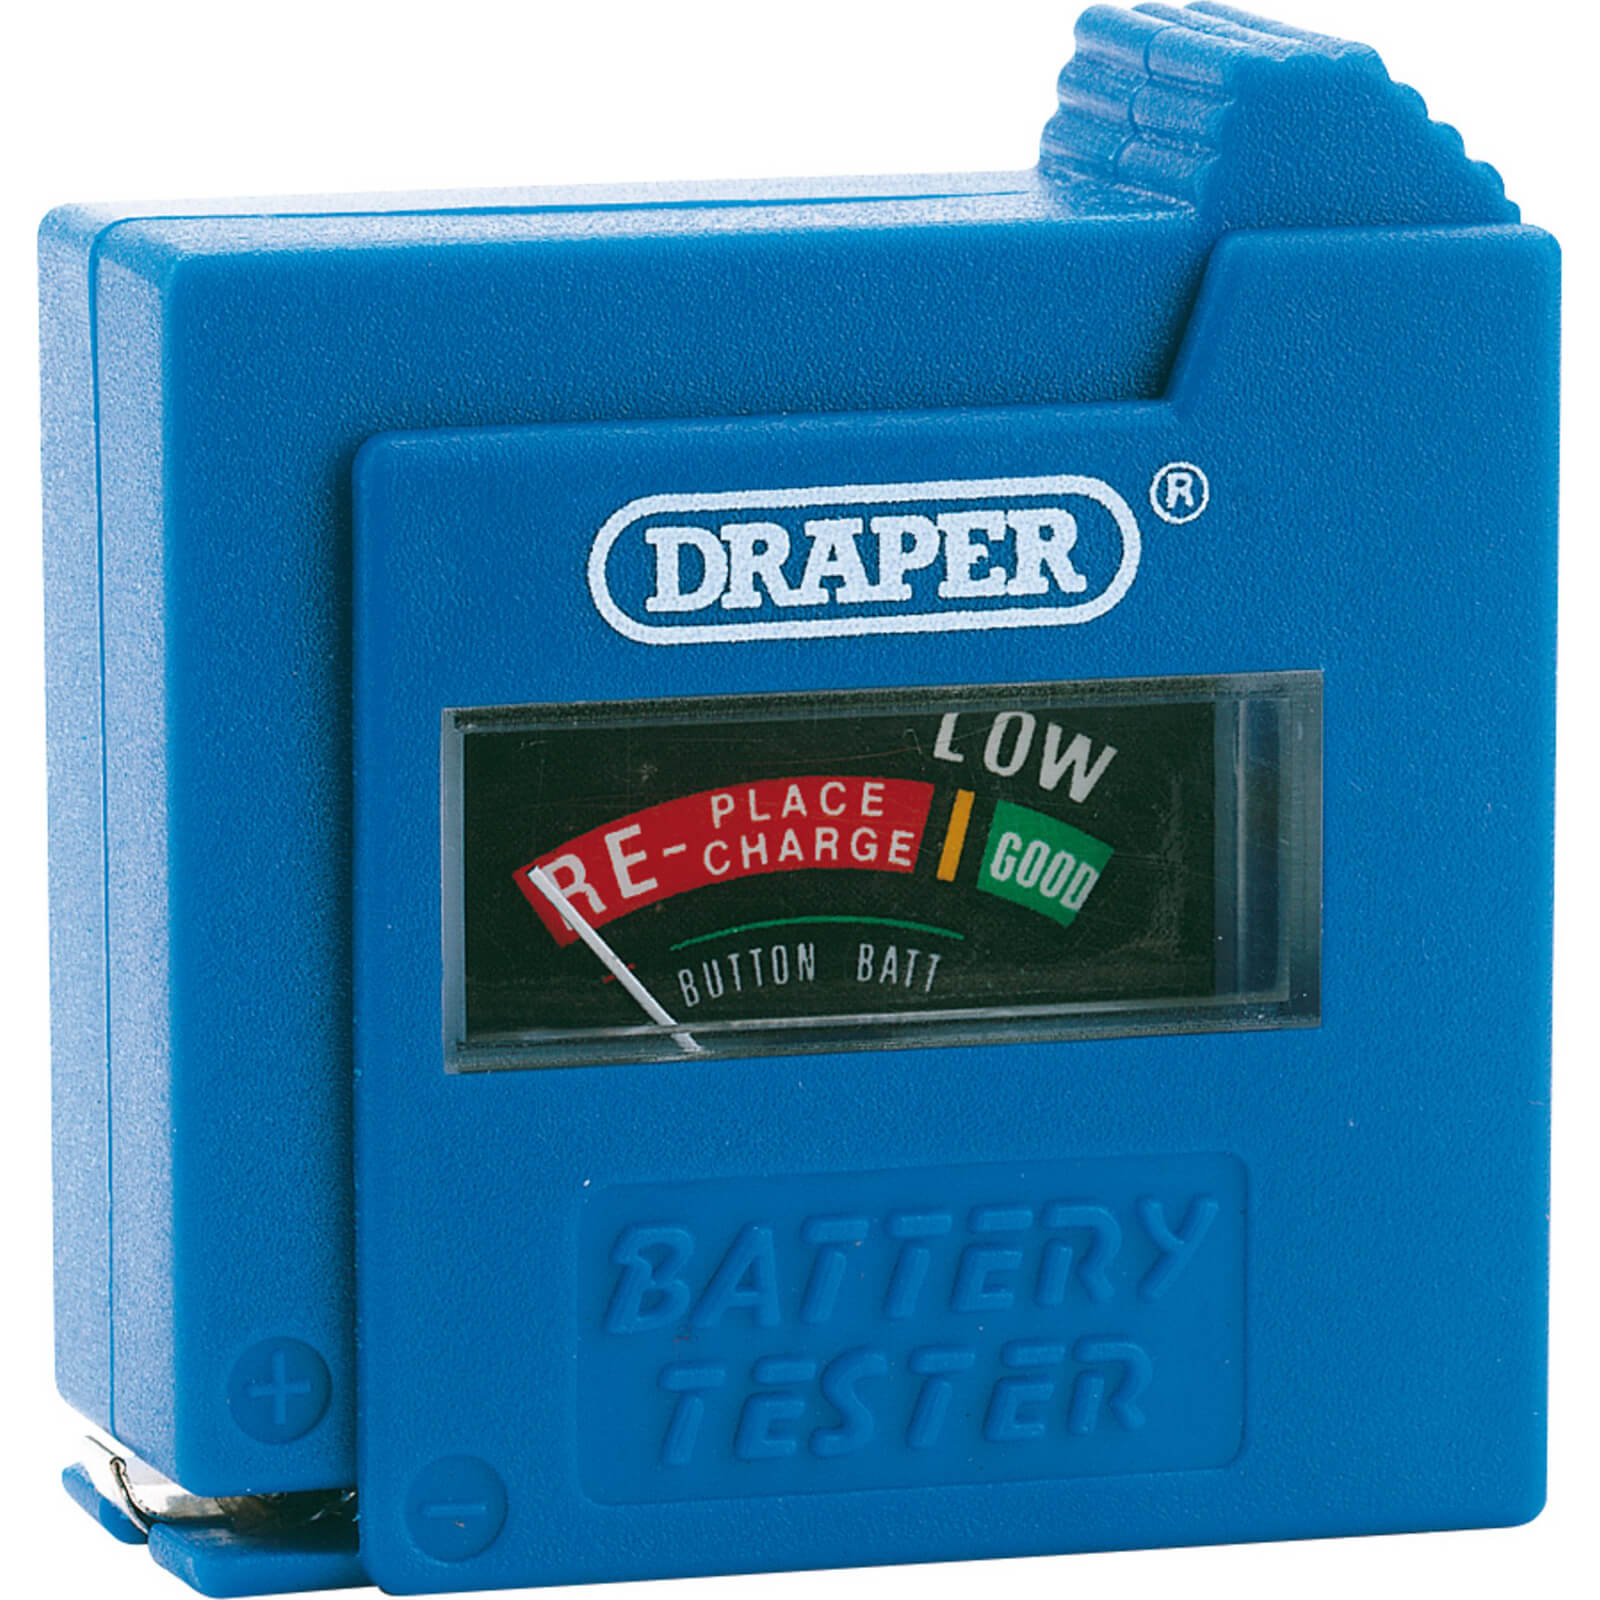 Photo of Draper Battery Tester